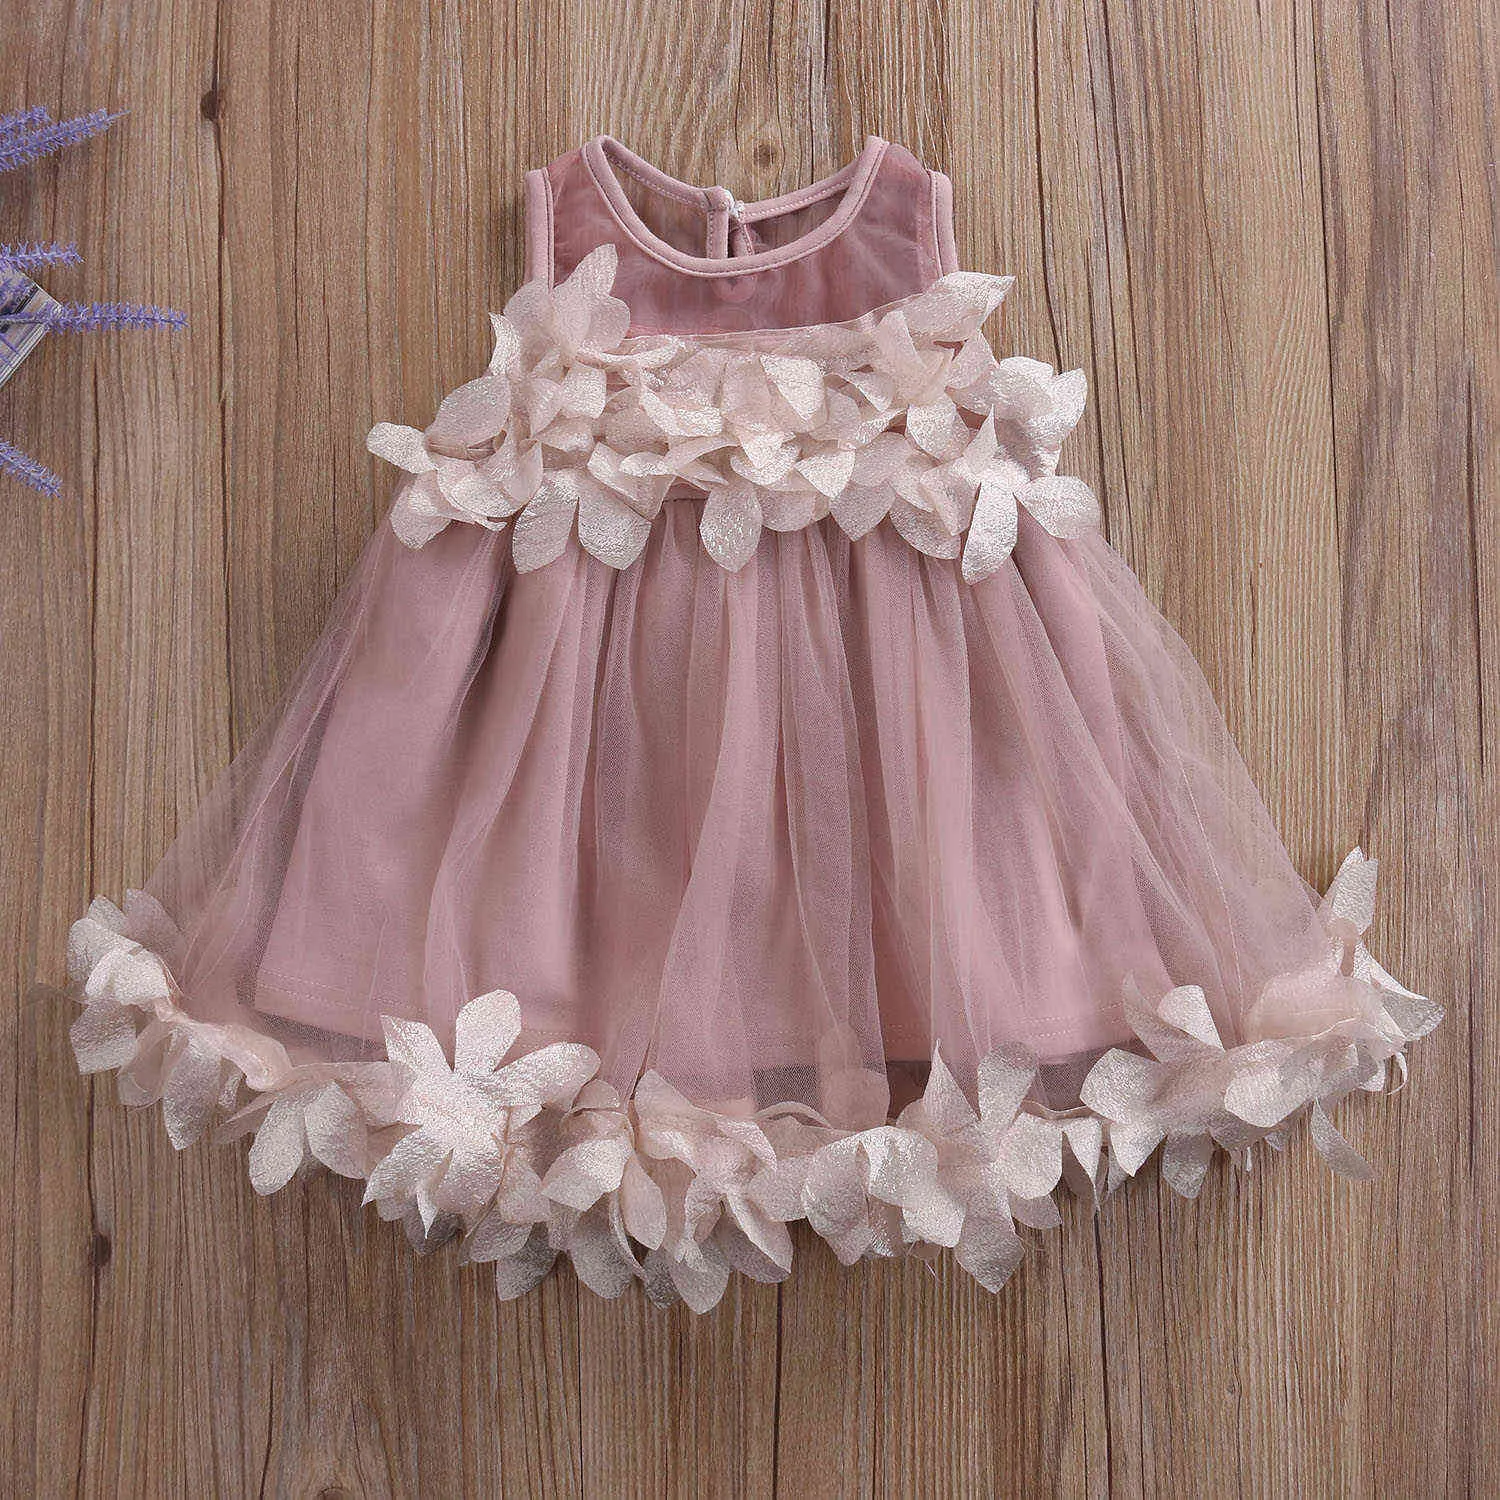 Été fleur enfants bébé fille dentelle robe de princesse demoiselle d'honneur pétale Tulle fête robe formelle robes Q0716